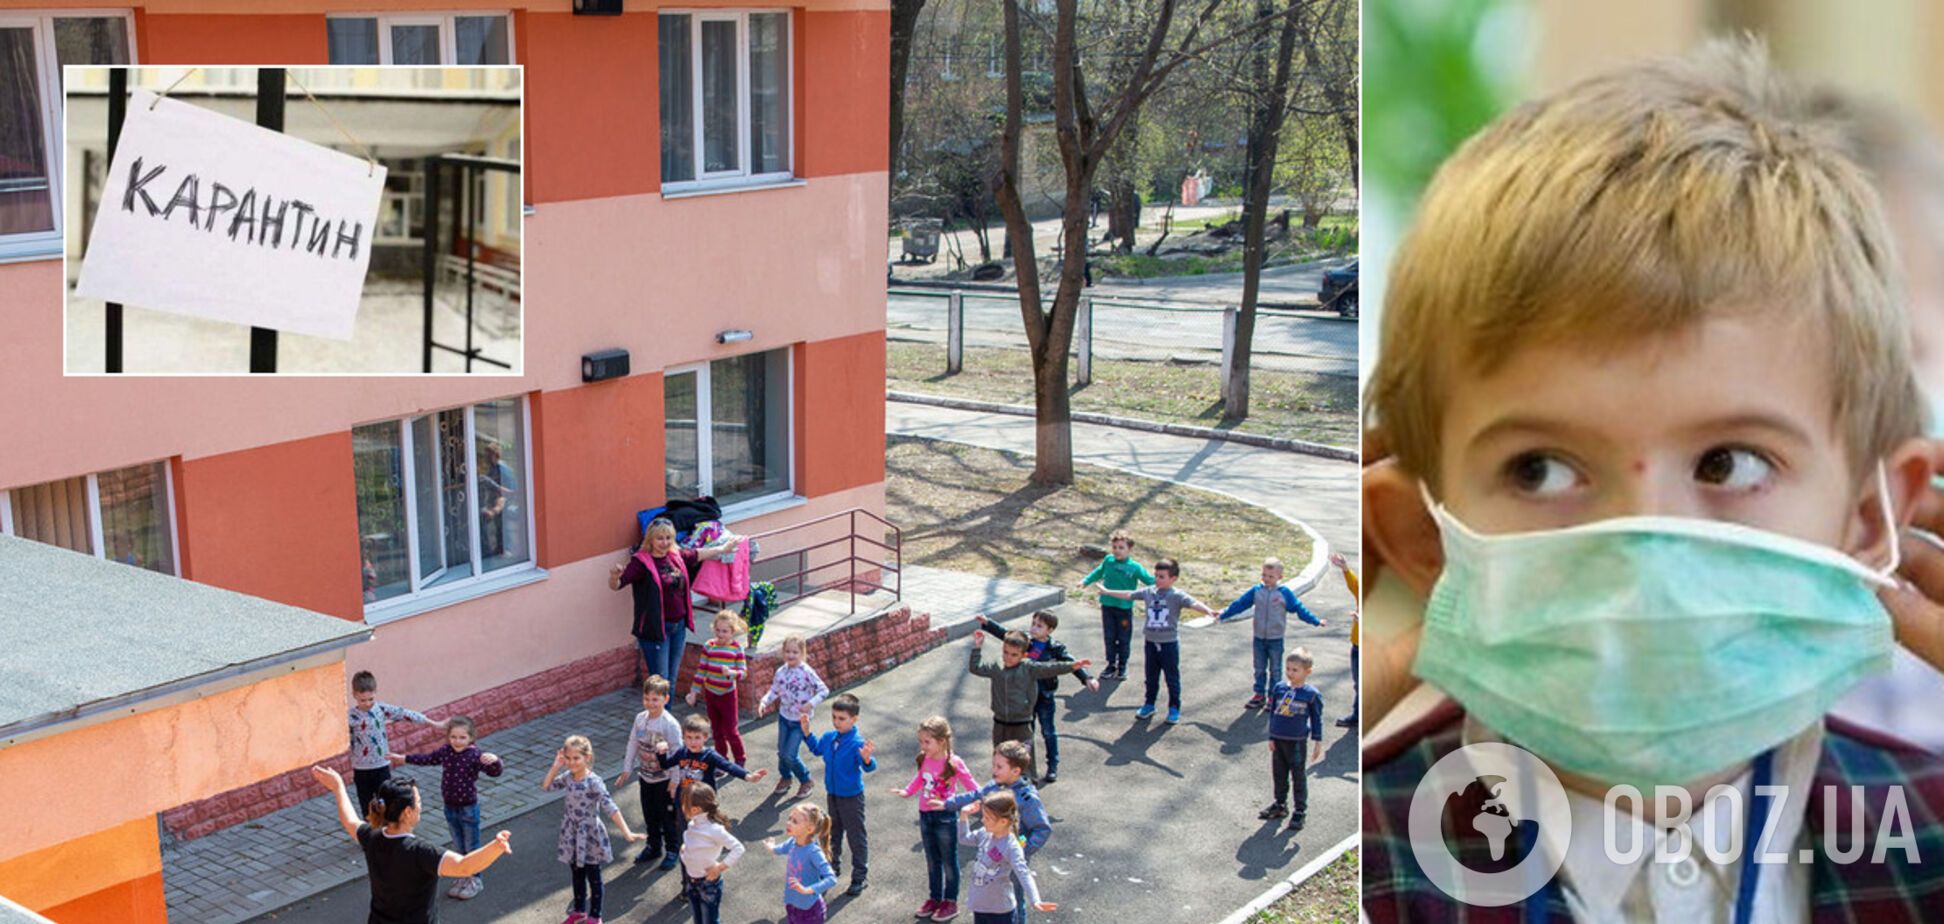 Как будуть работать детсады и школы Киева после карантина: что запретят